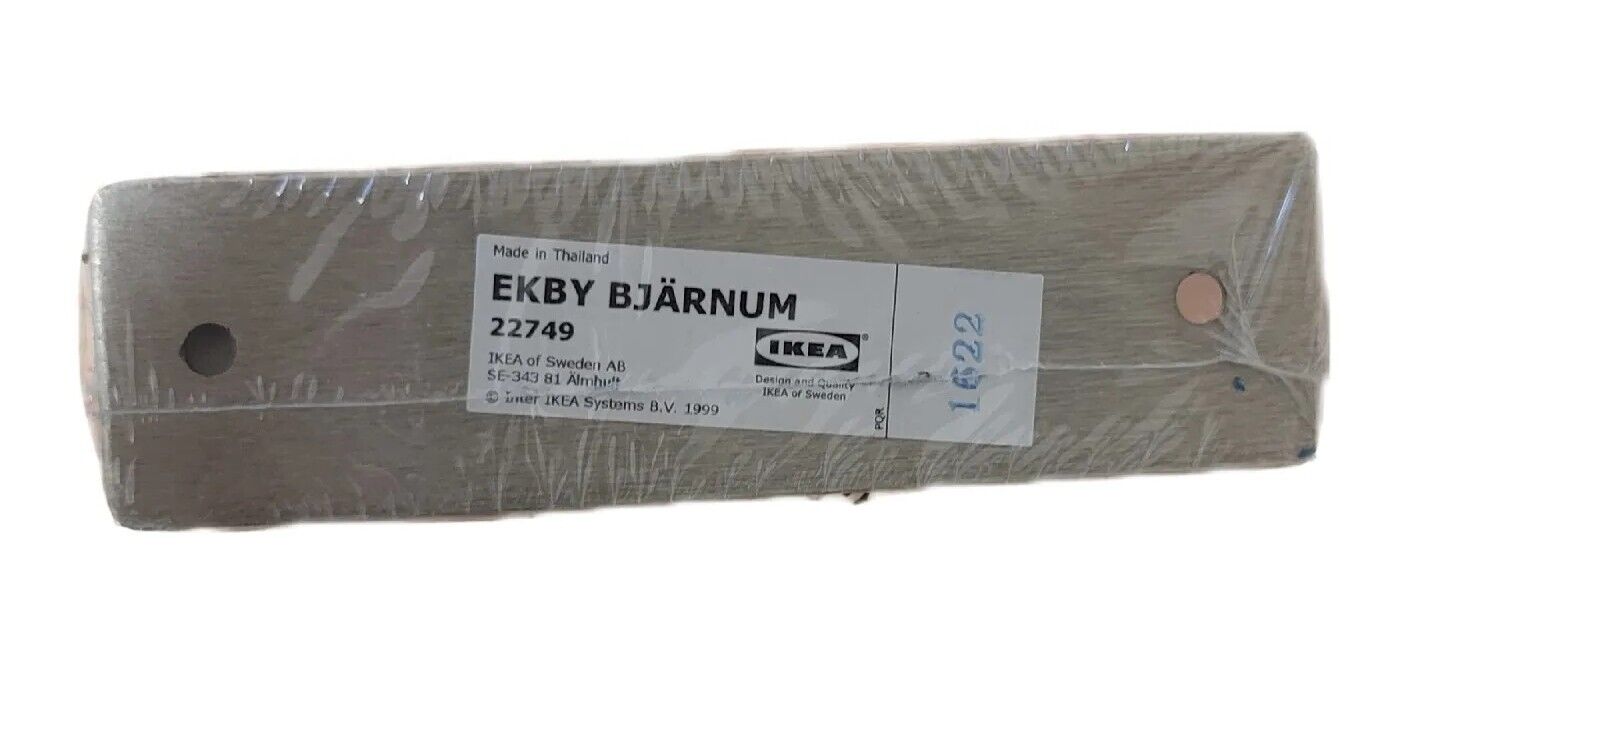 IKEA Ekby Bjarnum 11.25” Aluminum Shelf Brackets - 2 Brackets New In Packaging 